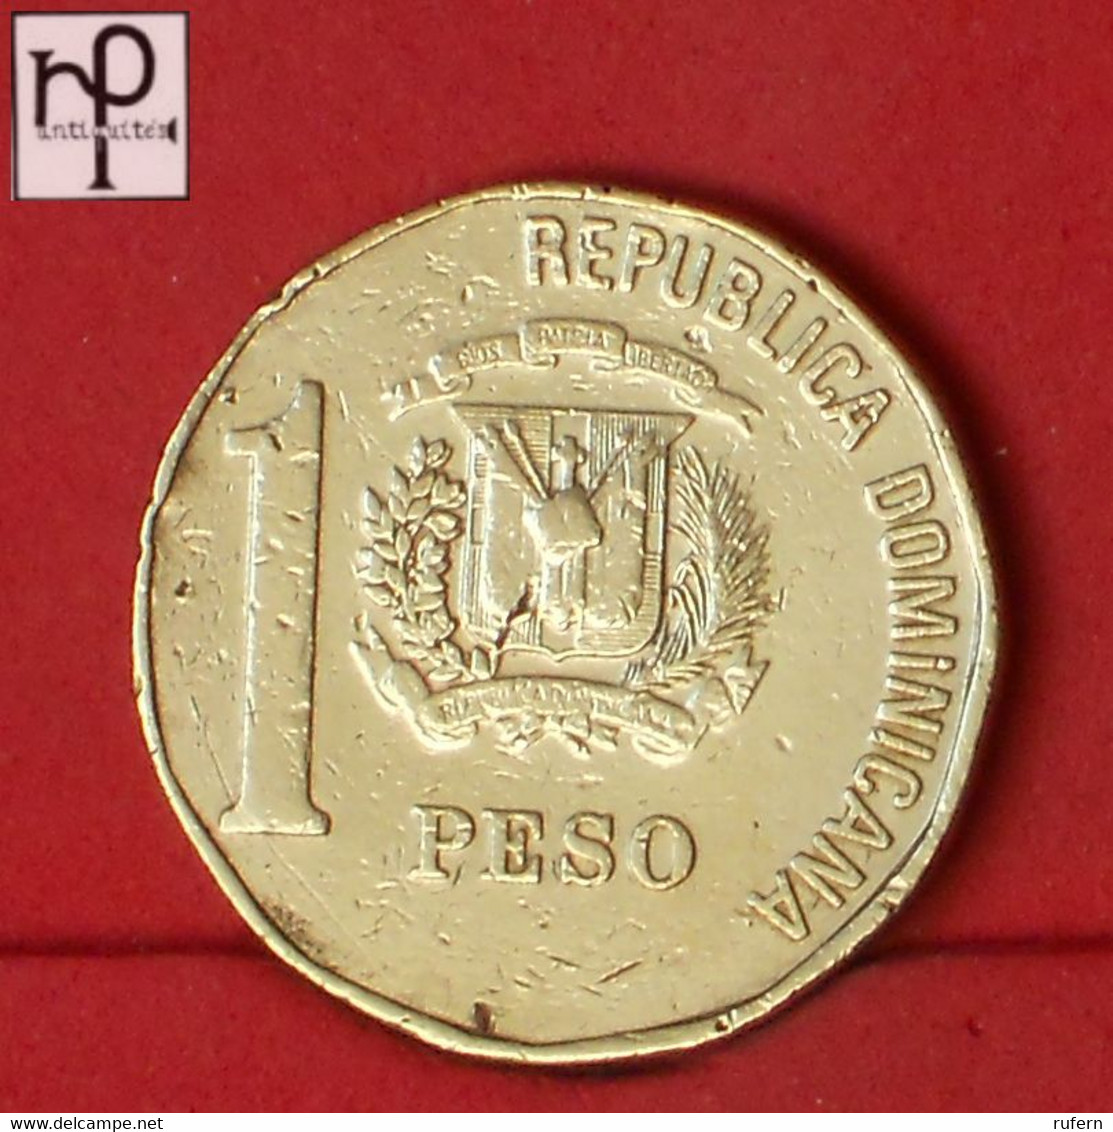 DOMINICANA REPUBLIC 1 PESO 1993 -    KM# 80,2 - (Nº52997) - Dominikanische Rep.